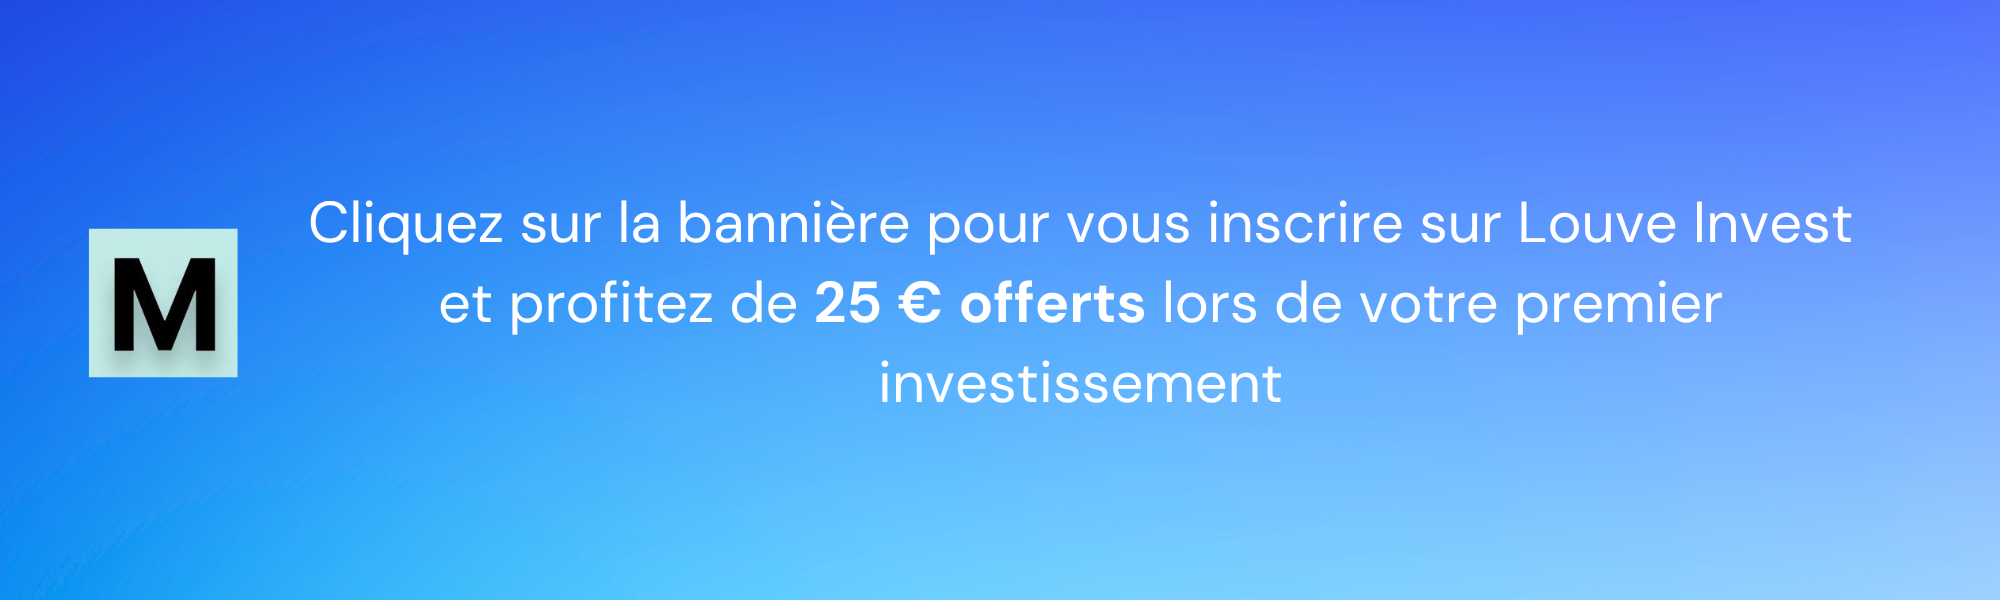 Parrainage Louve Invest : 25 € offerts et 3 % de cashback